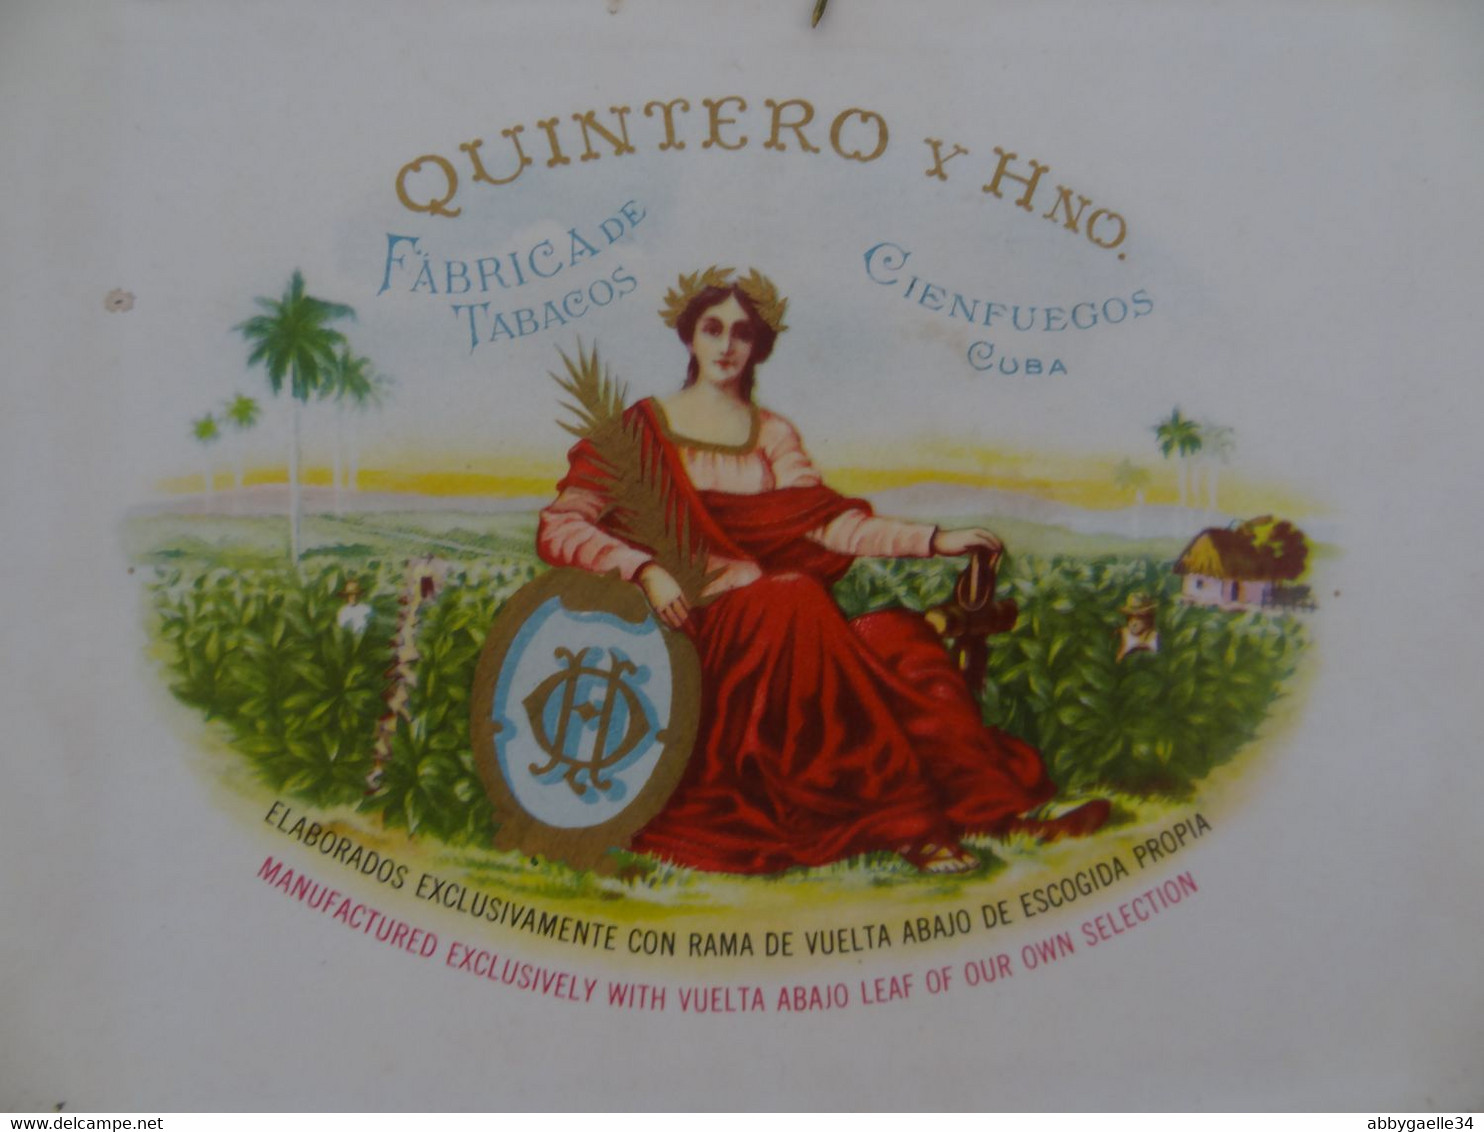 * Lot de 4 boîtes de tabac vides bois * Partagas Flor de Tabacos, Quintero y Hno, Cienfuegos, Delfuma Havane Cuba (lot 1